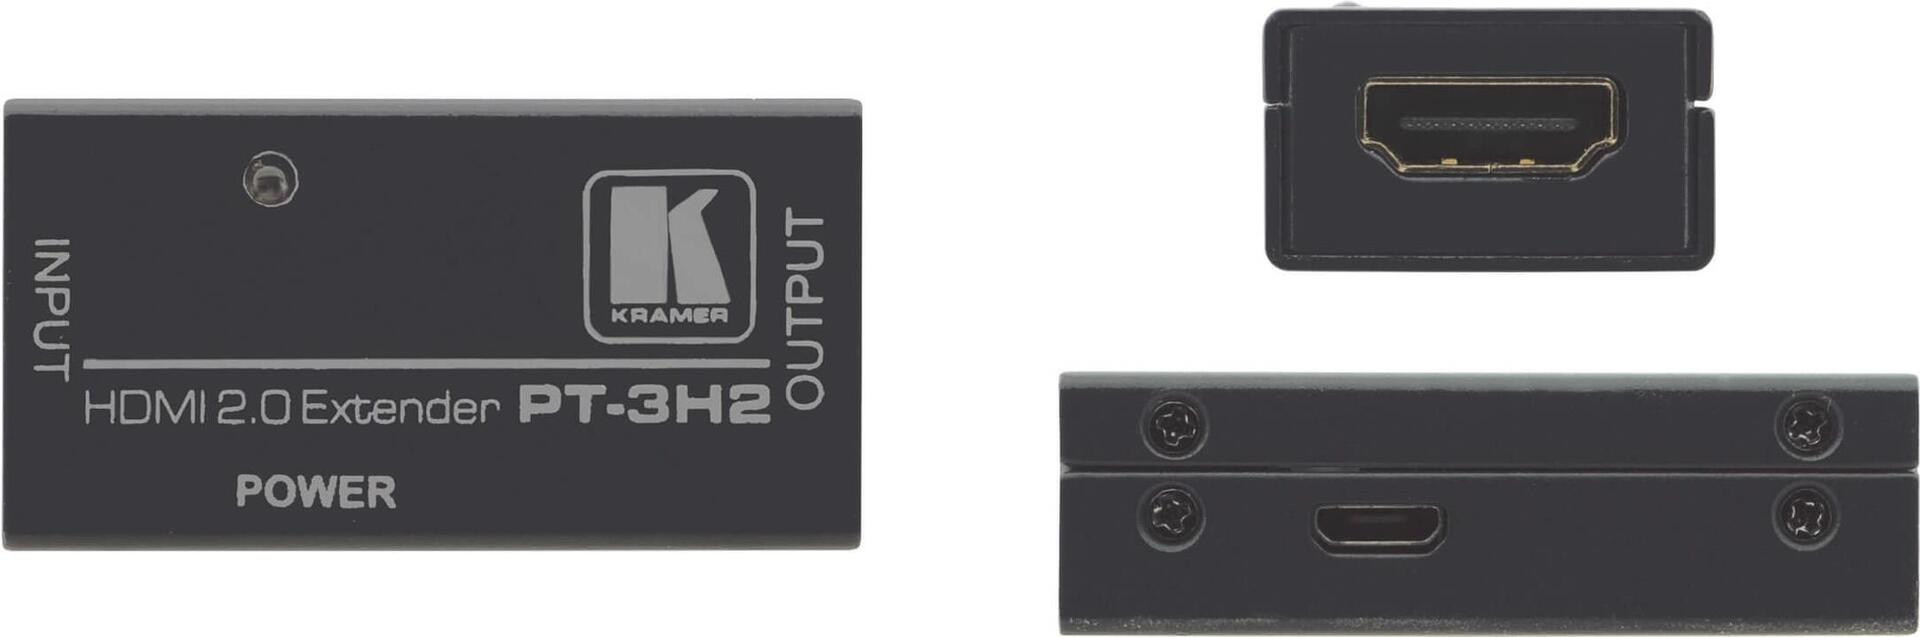 KRAMER PT-3H2 4K UHD HDMI 2.0 Extender bis zu 20m bei 4K 60Hz 45m bei 1080p 60Hz kann passiv verwendet werden 4,95Gbps max (50-003290)